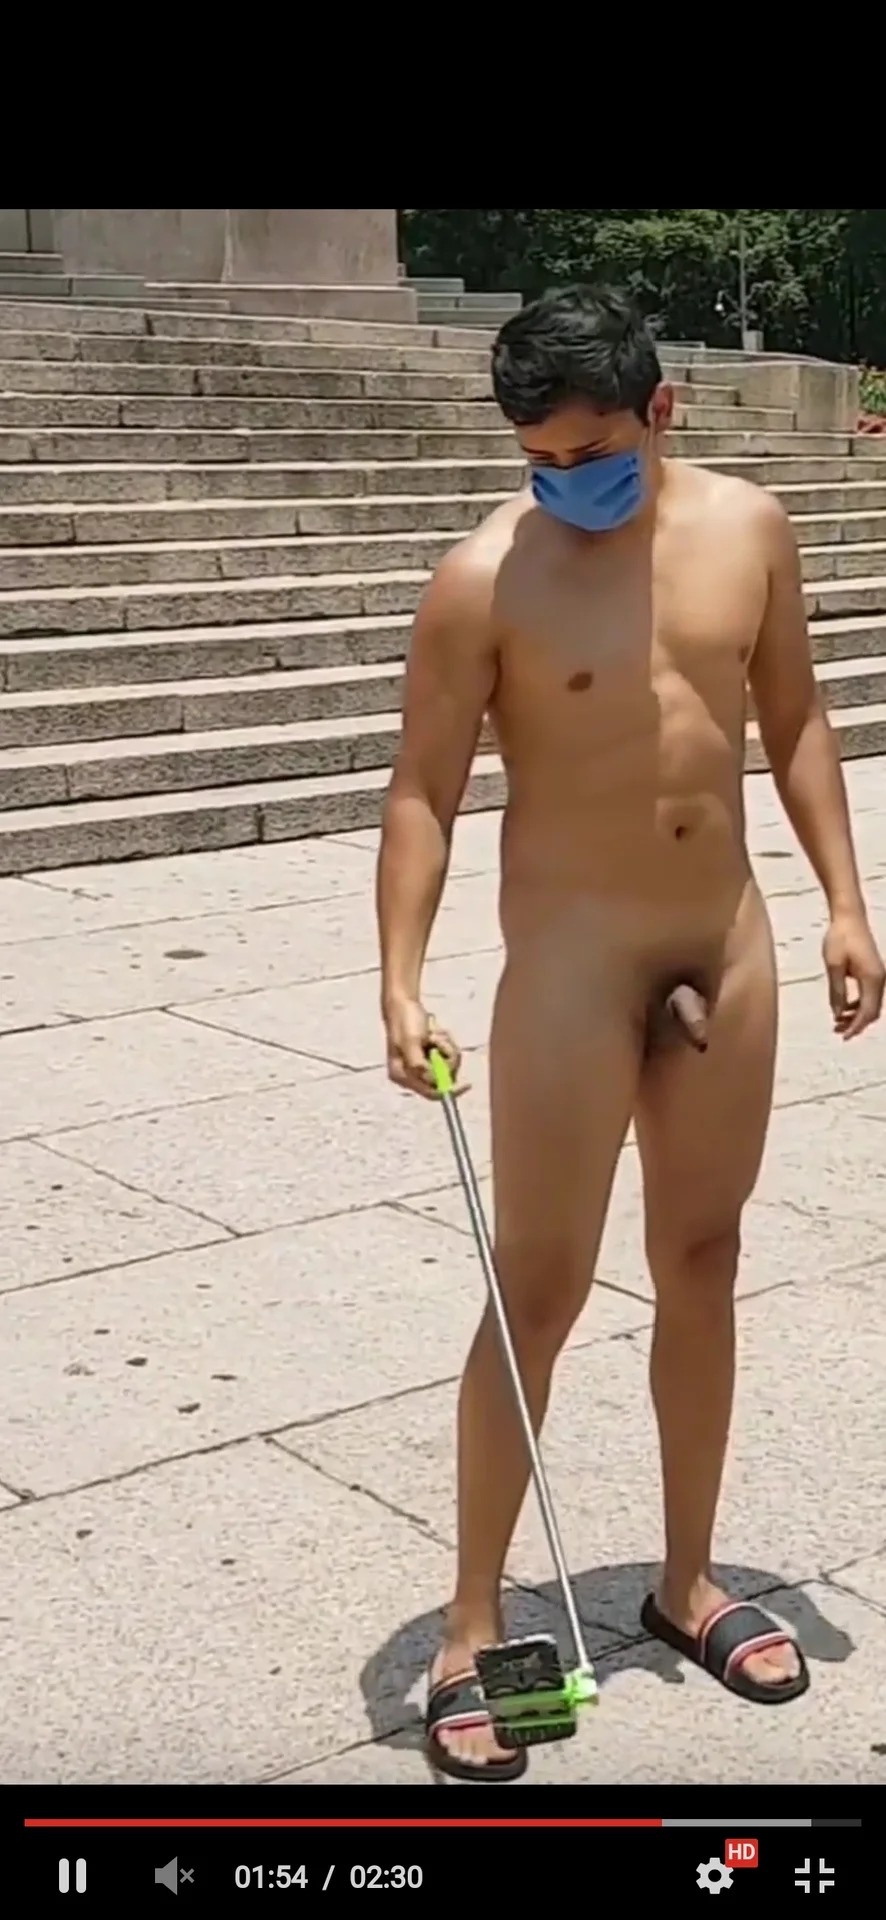 cameron prata add nude male in public photo